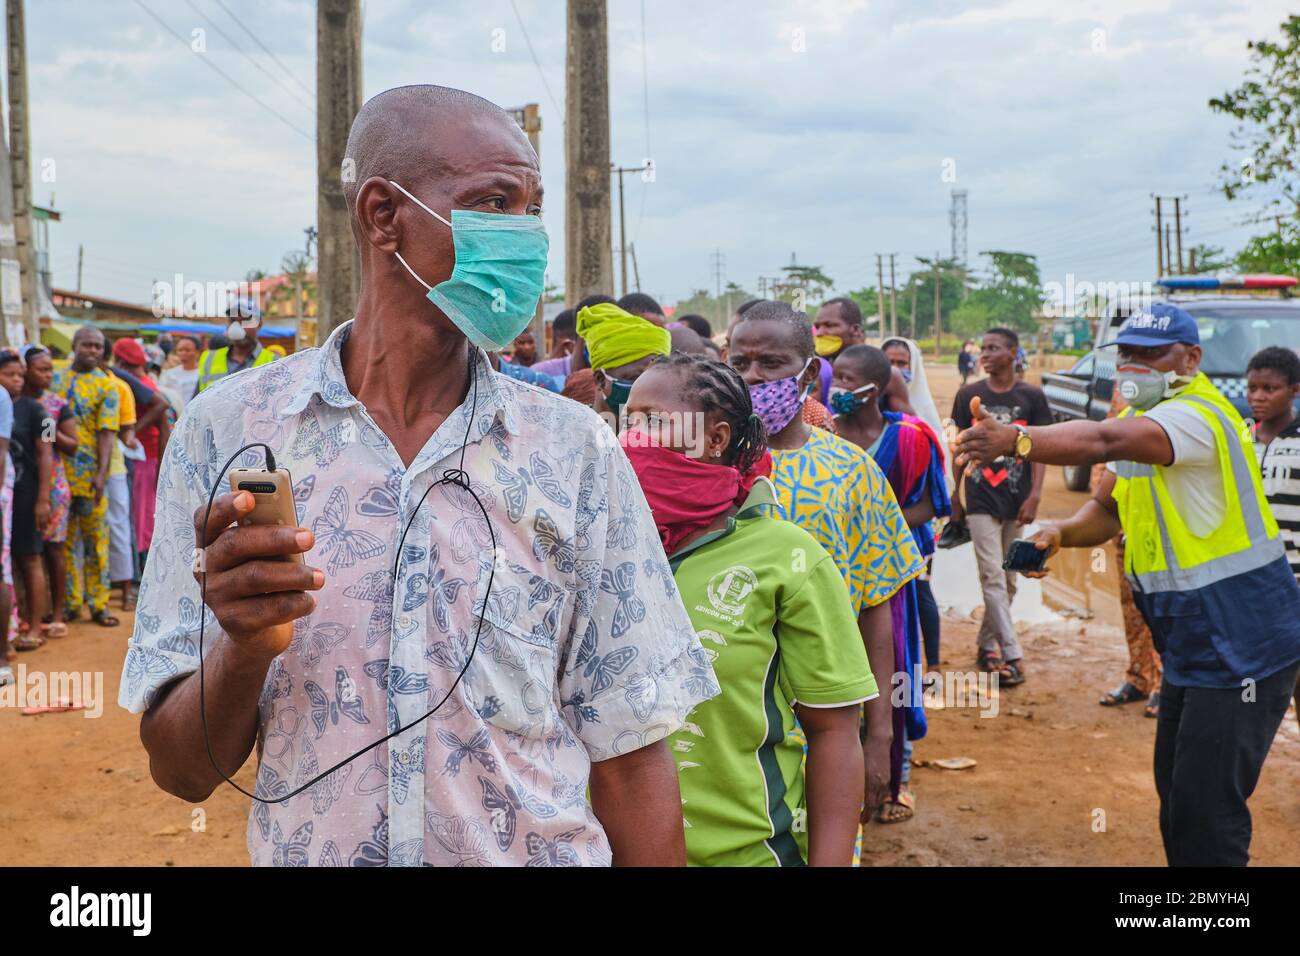 Regierungsbeamte versuchen, eine Menschenmenge zu kontrollieren, die während der Blockade der Covid-19-Pandemie in Lagos - Nigeria für Hilfspakete anstehen. Stockfoto